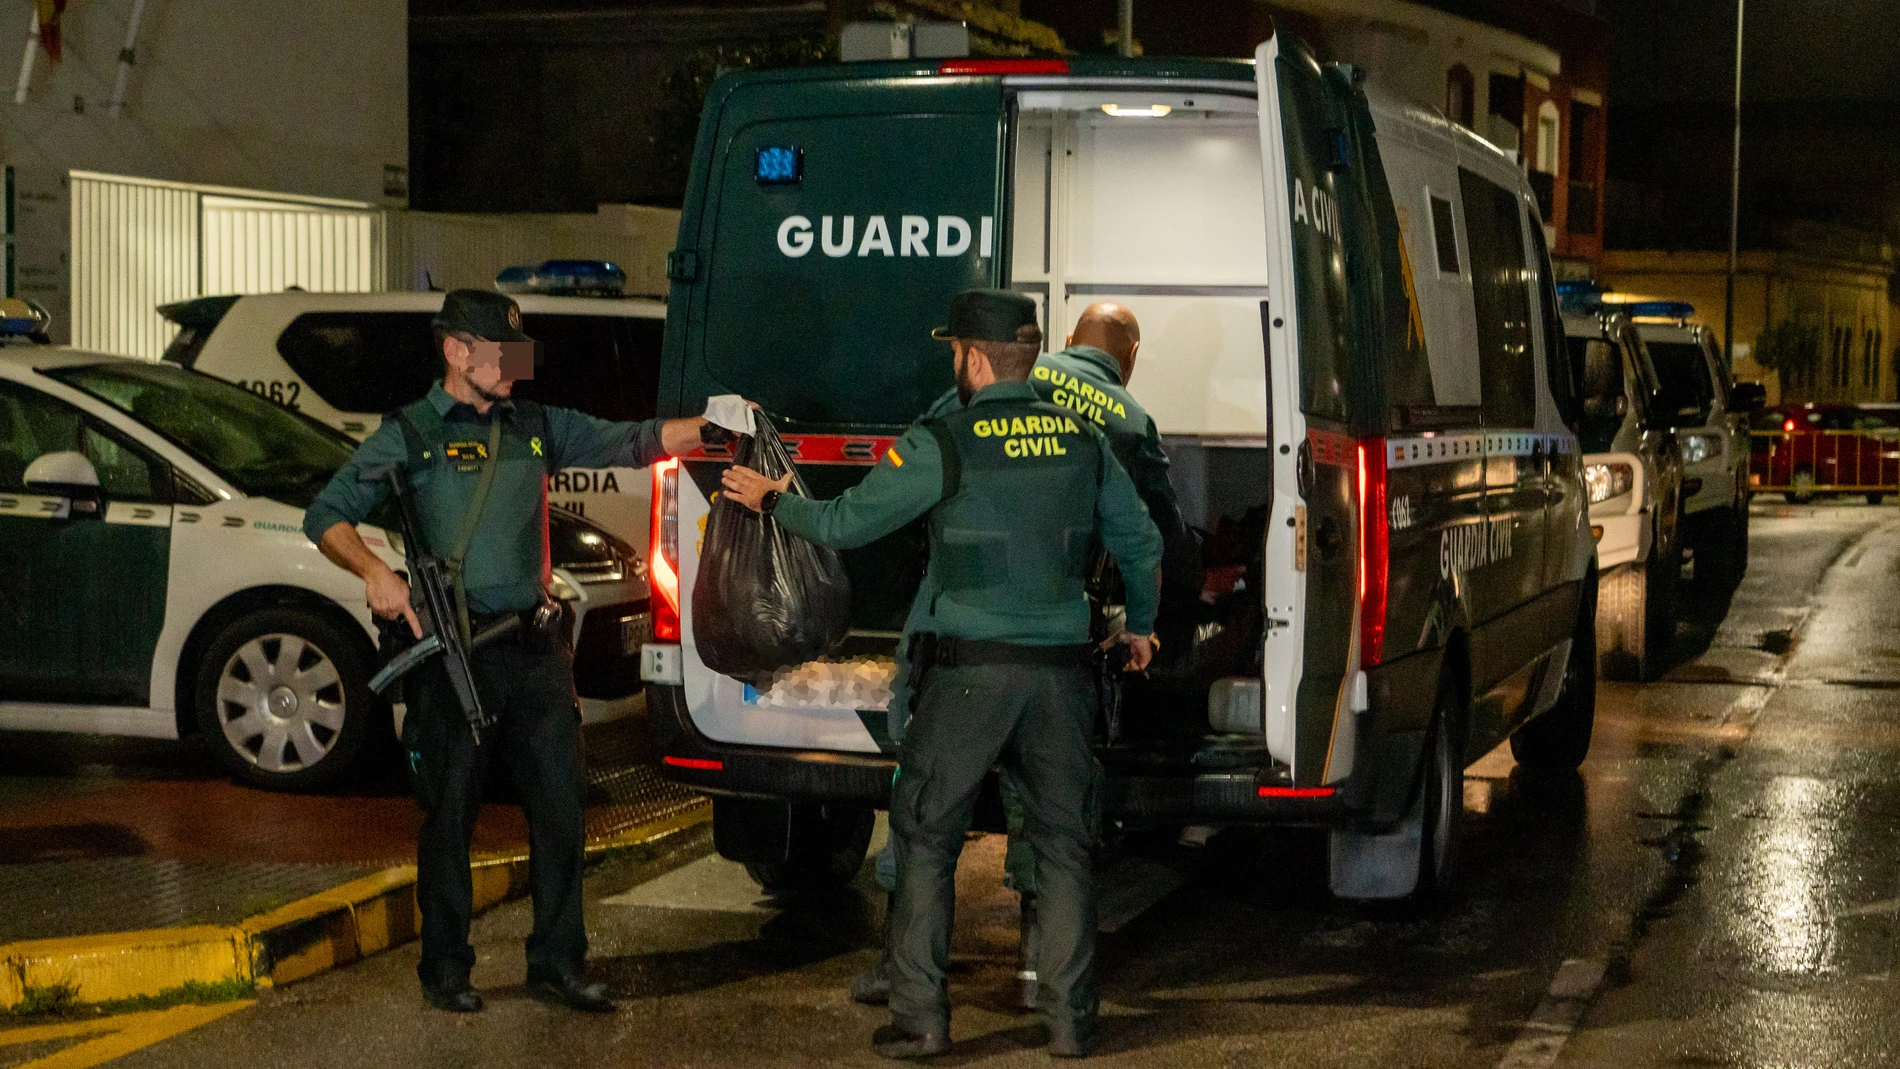 La Guardia Civil introducen en los furgones las pertenencias de los detenidos, a 12 de febrero de 2024, en Barbate, Cádiz, (Andalucía, España). El Juzgado mixto número uno de Barbate (Cádiz) ha acordado en la tarde de este lunes el ingreso en prisión provisional de los seis tripulantes de la narcolancha que el pasado viernes arrolló a una patrullera de la Guardia Civil y ocasionó la muerte de dos agentes en acto de servicio.12 FEBRERO 2024Francisco J. Olmo / Europa Press12/02/2024